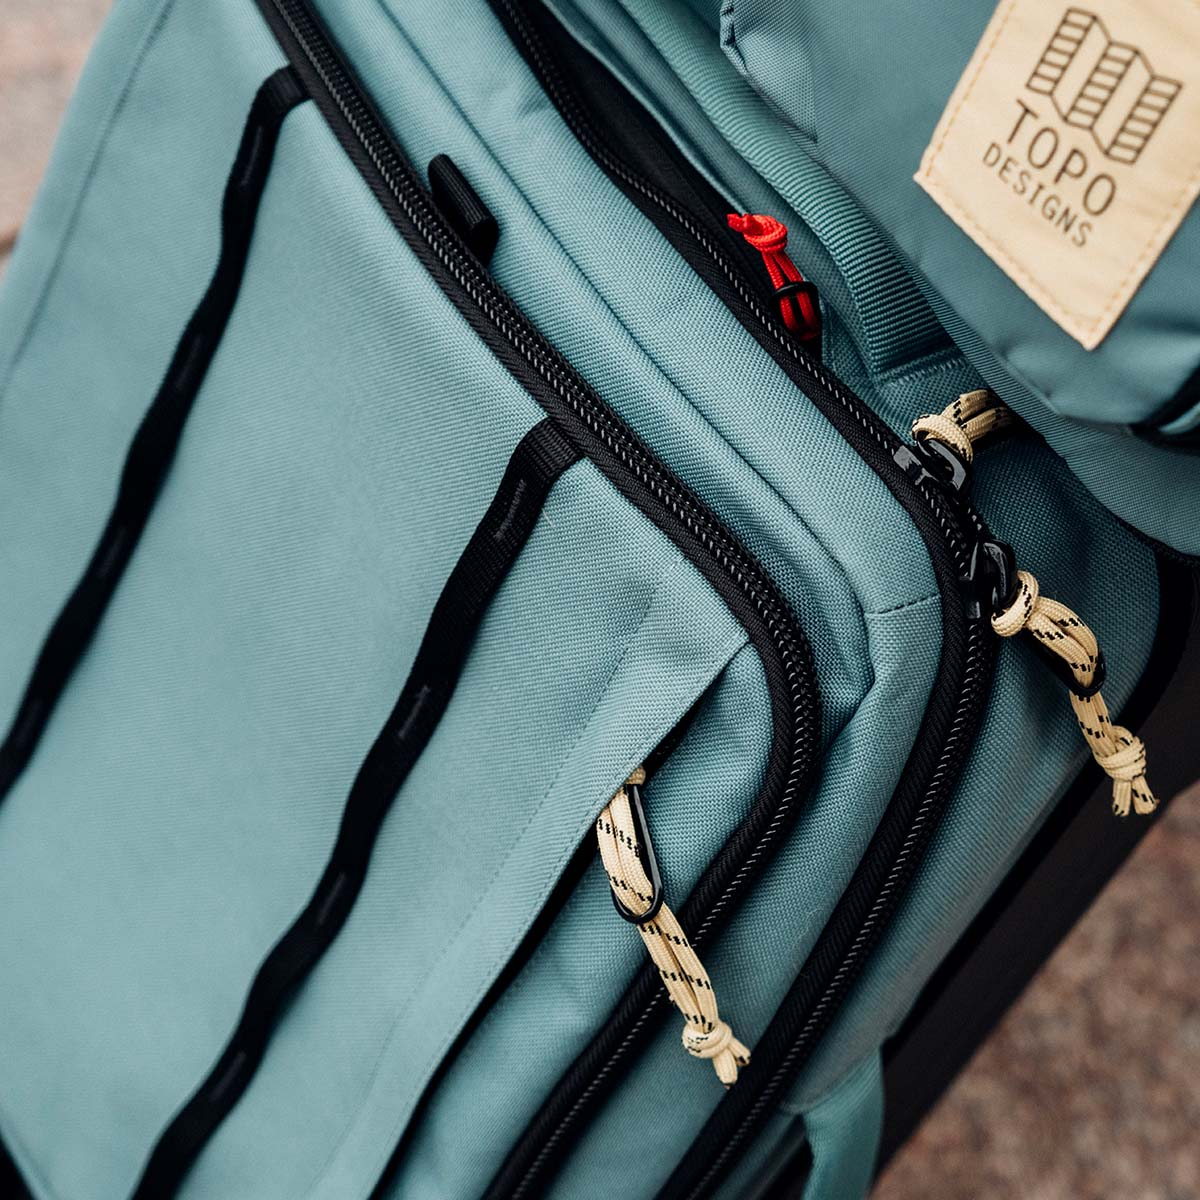 Topo Designs Global Travel Bag Roller Sea Pine, handbagage vriendelijke formaat en de 3-draagmogelijkheden zorgen voor een soepele reis